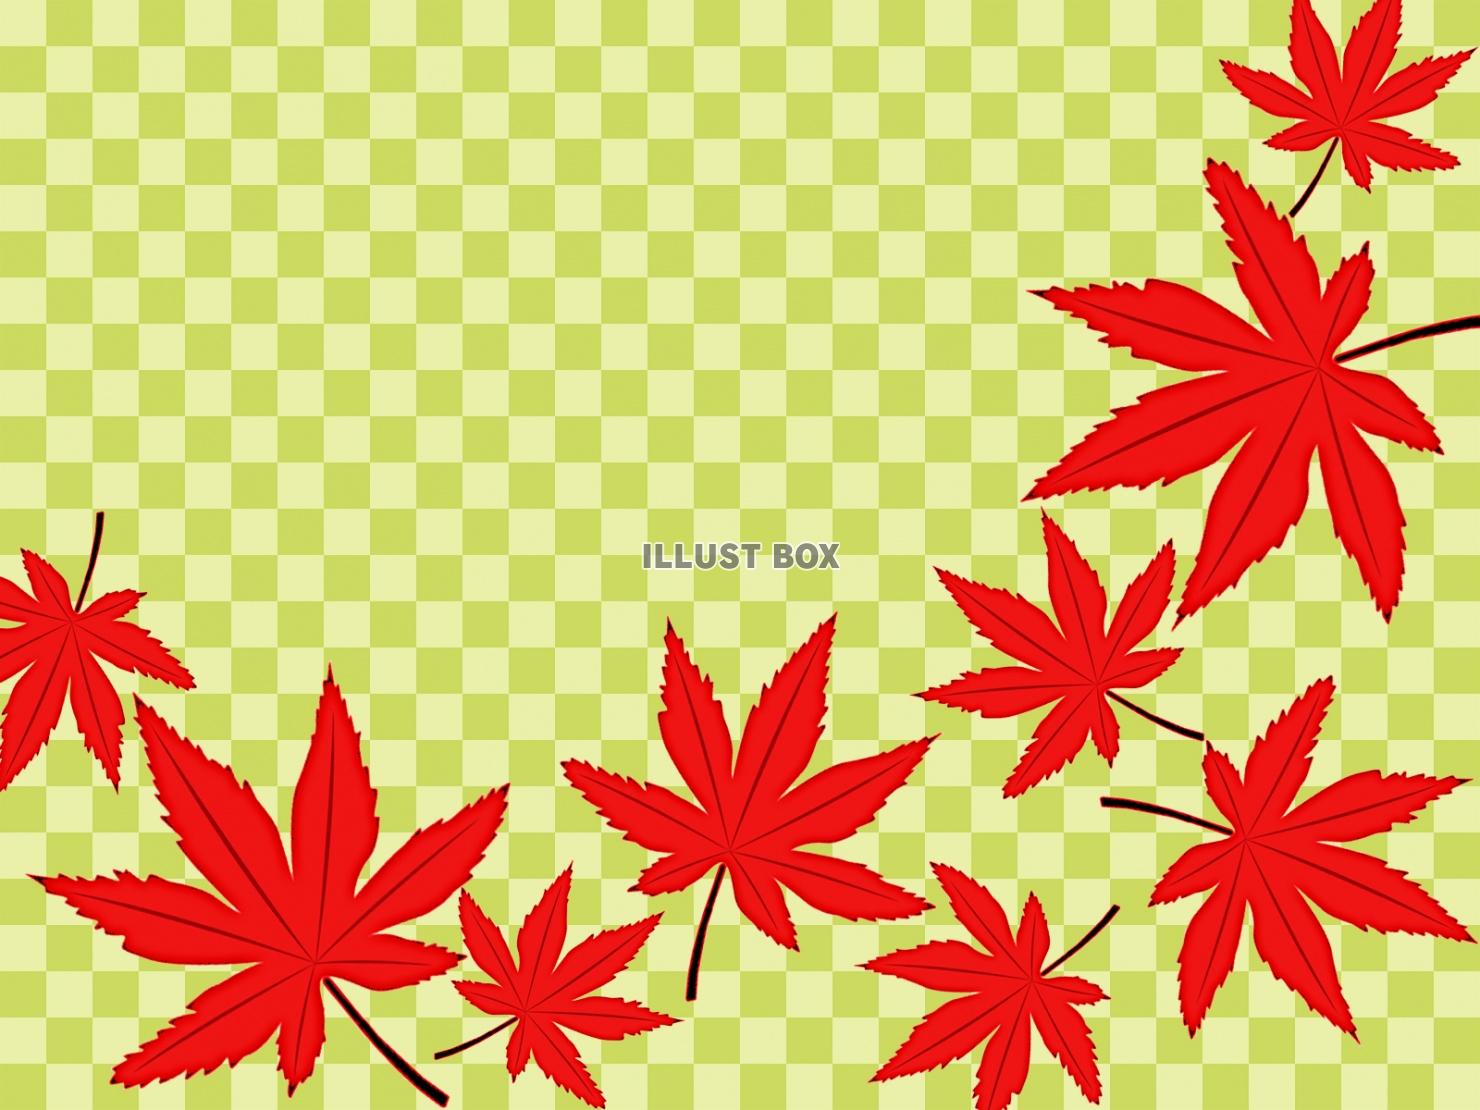 無料イラスト 市松模様と紅葉の葉っぱ壁紙シンプル背景素材イラスト